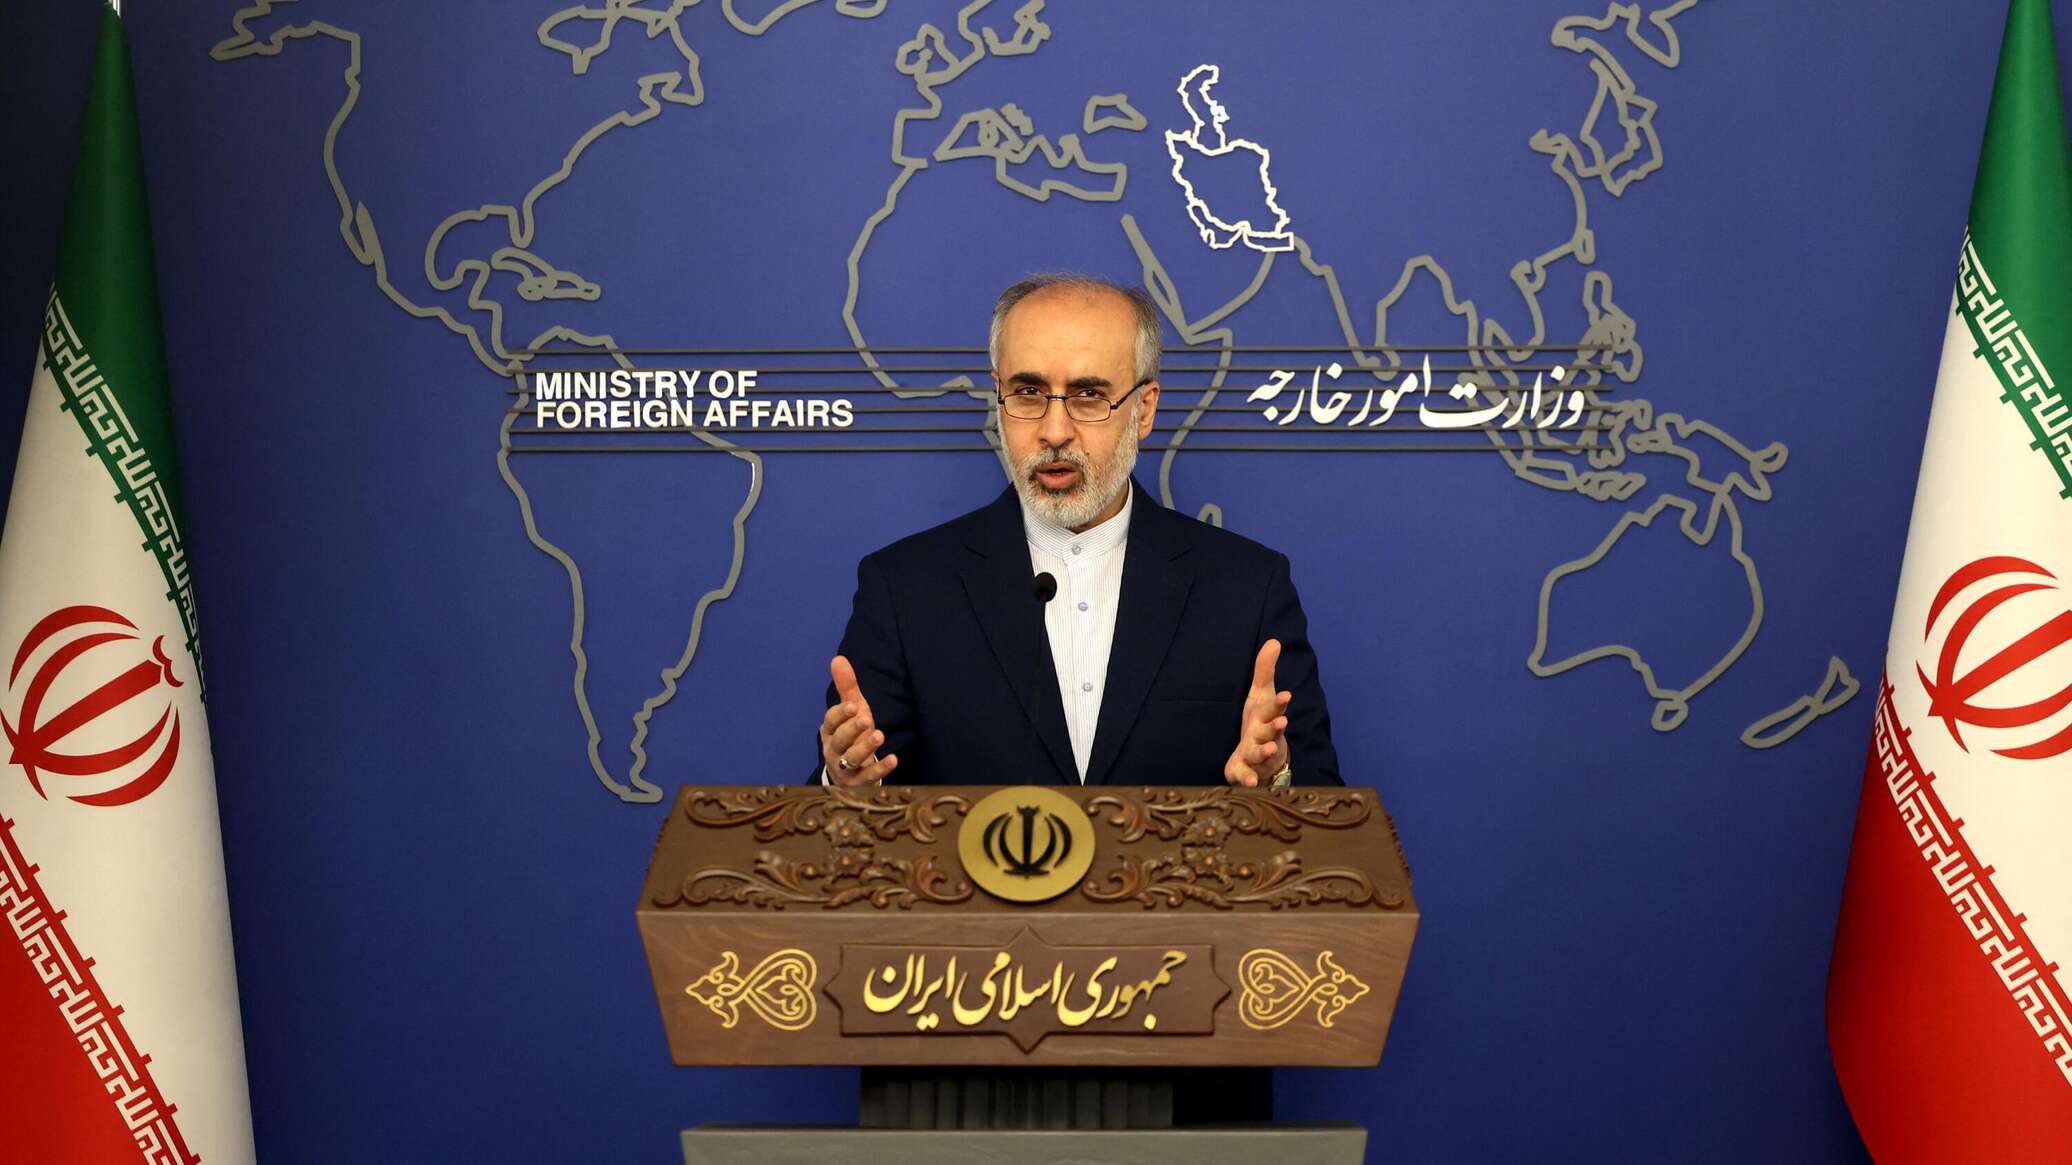 إيران تستنكر تصنيف واشنطن "أنصار الله" منظمة إرهابية وتعتبره "عملا استفزازيا"